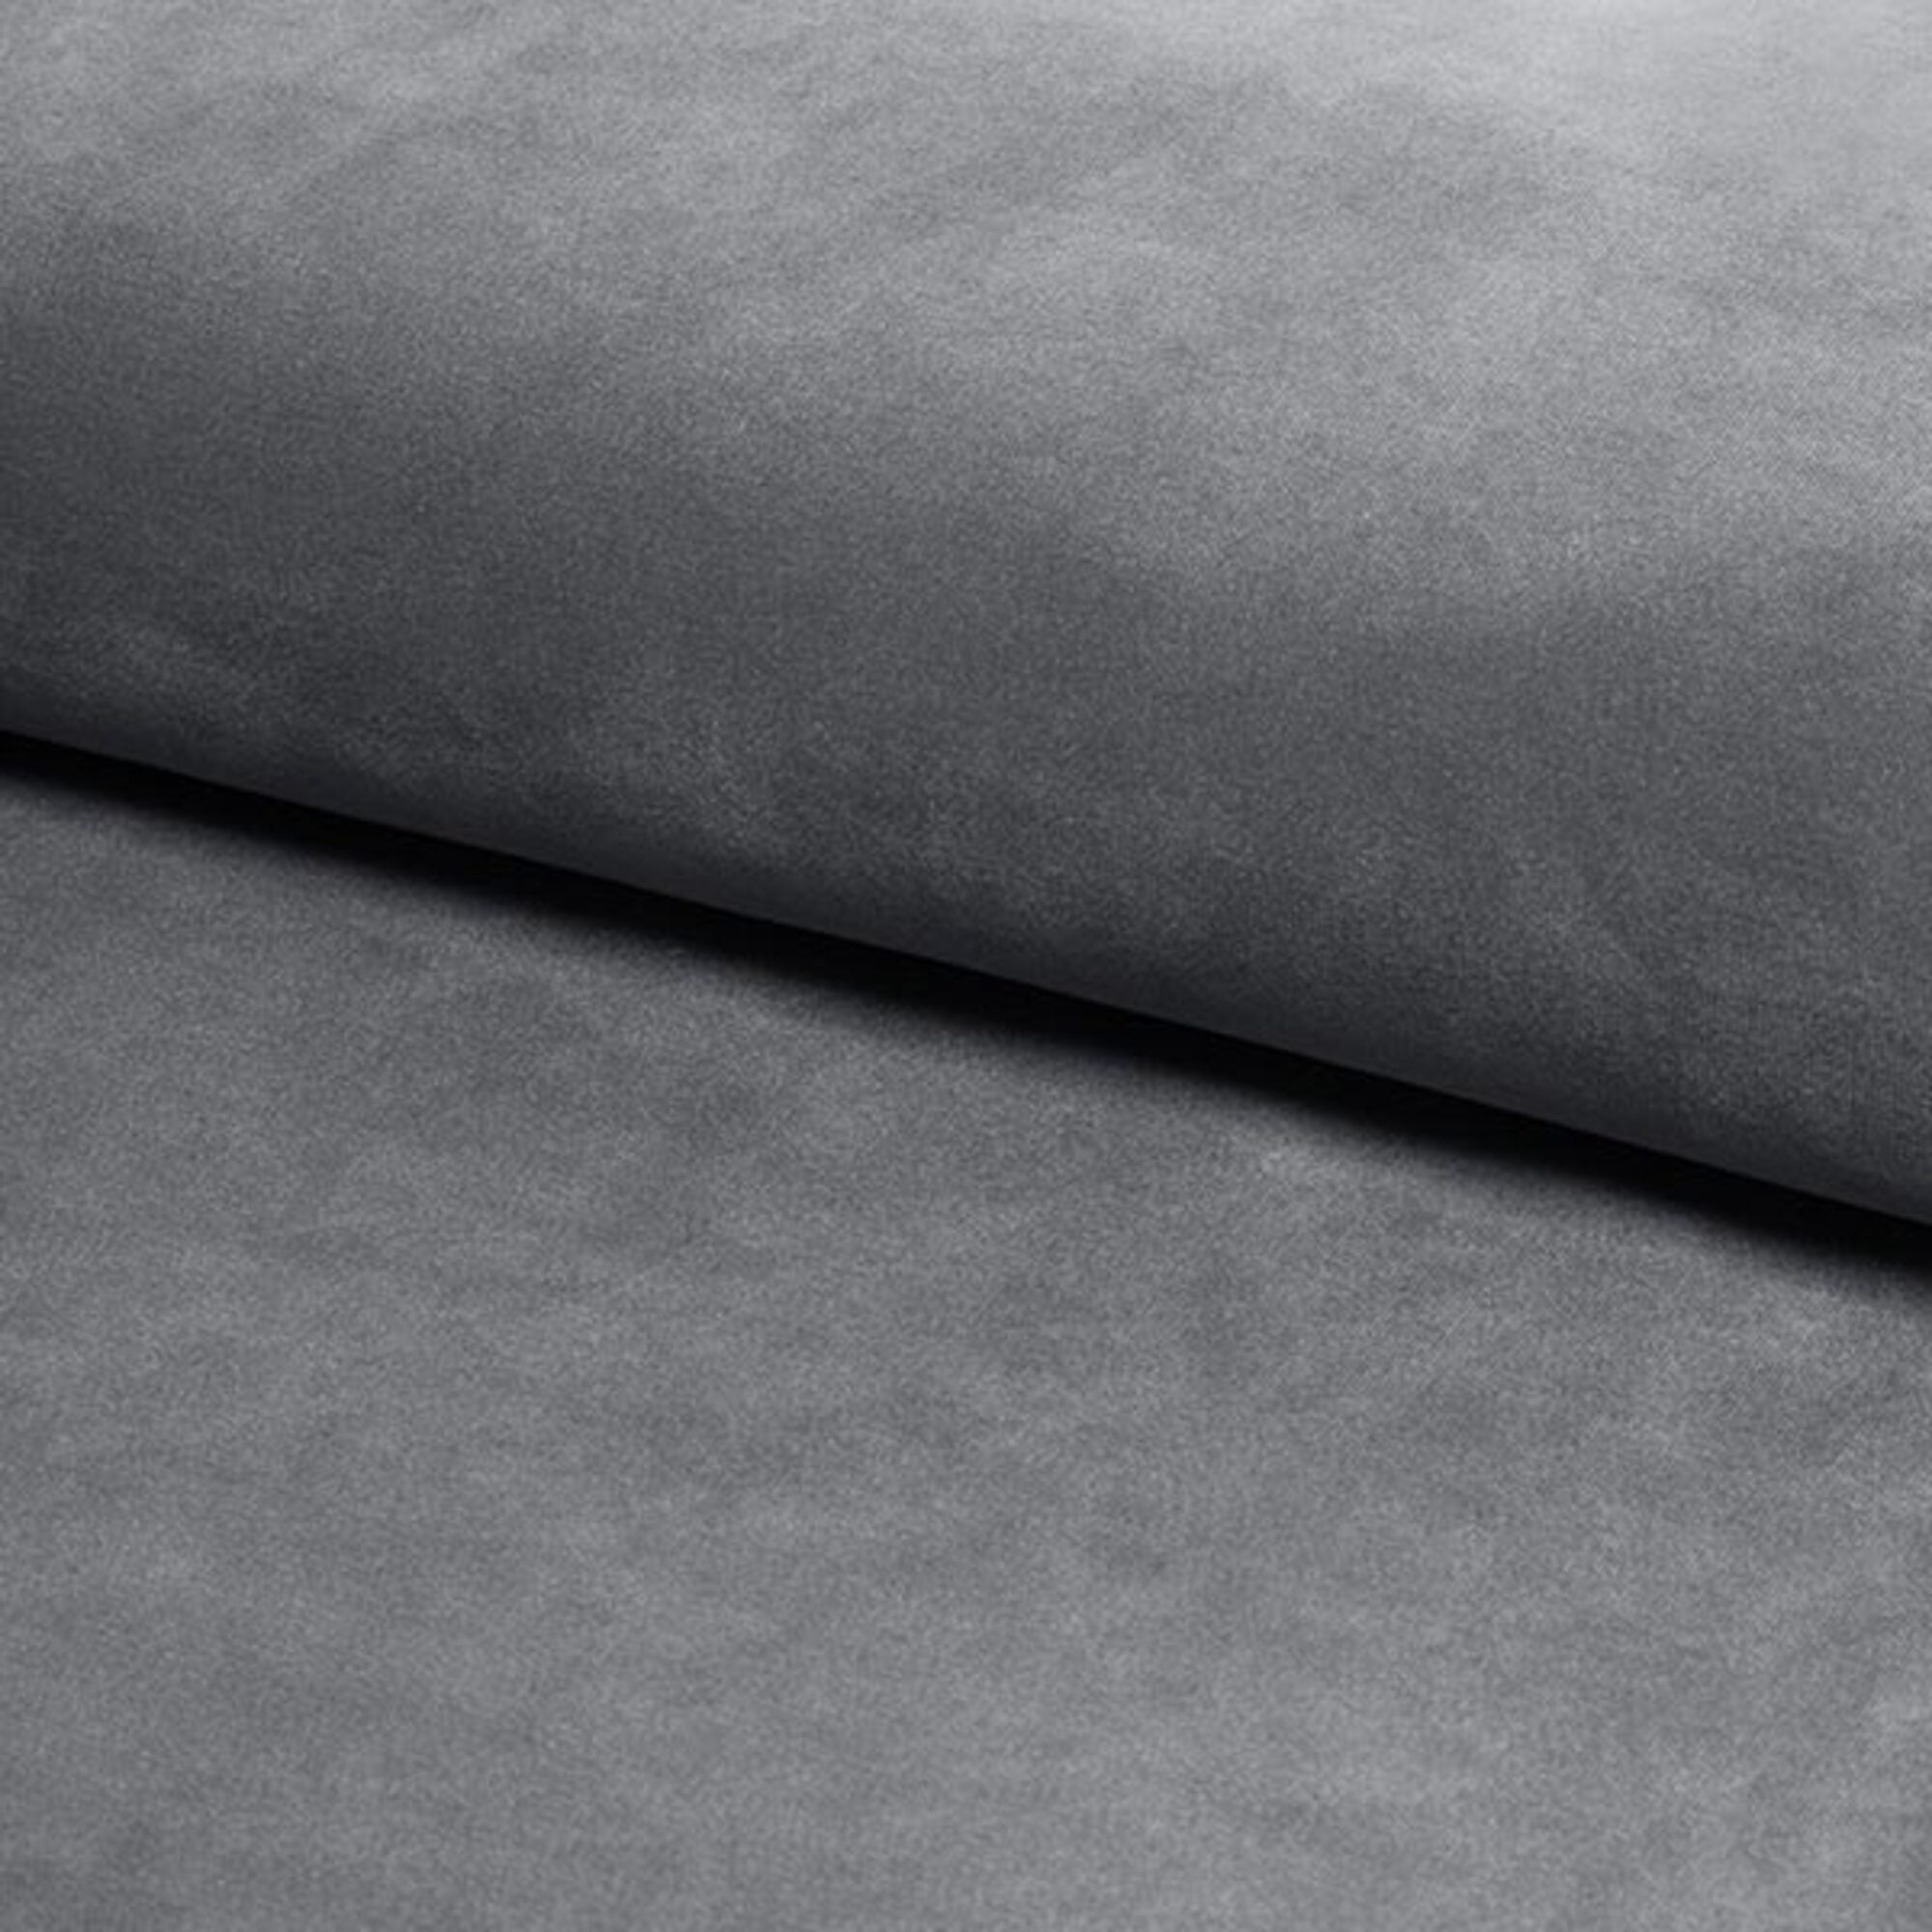 Paris Lined Upholstered Bed Frame